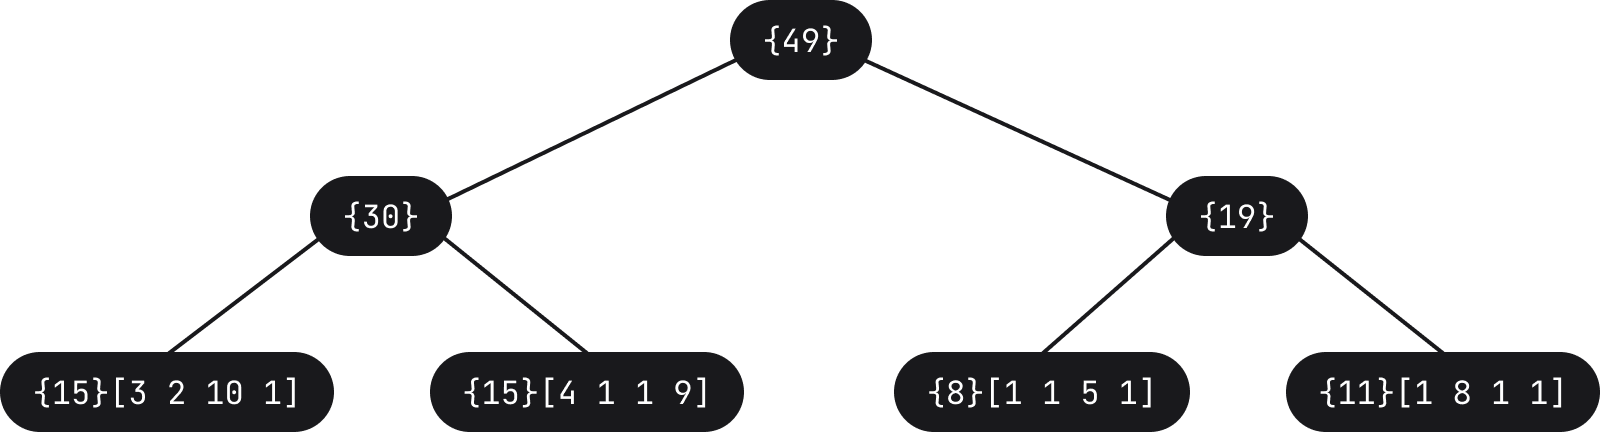 5_diagram-2x.png